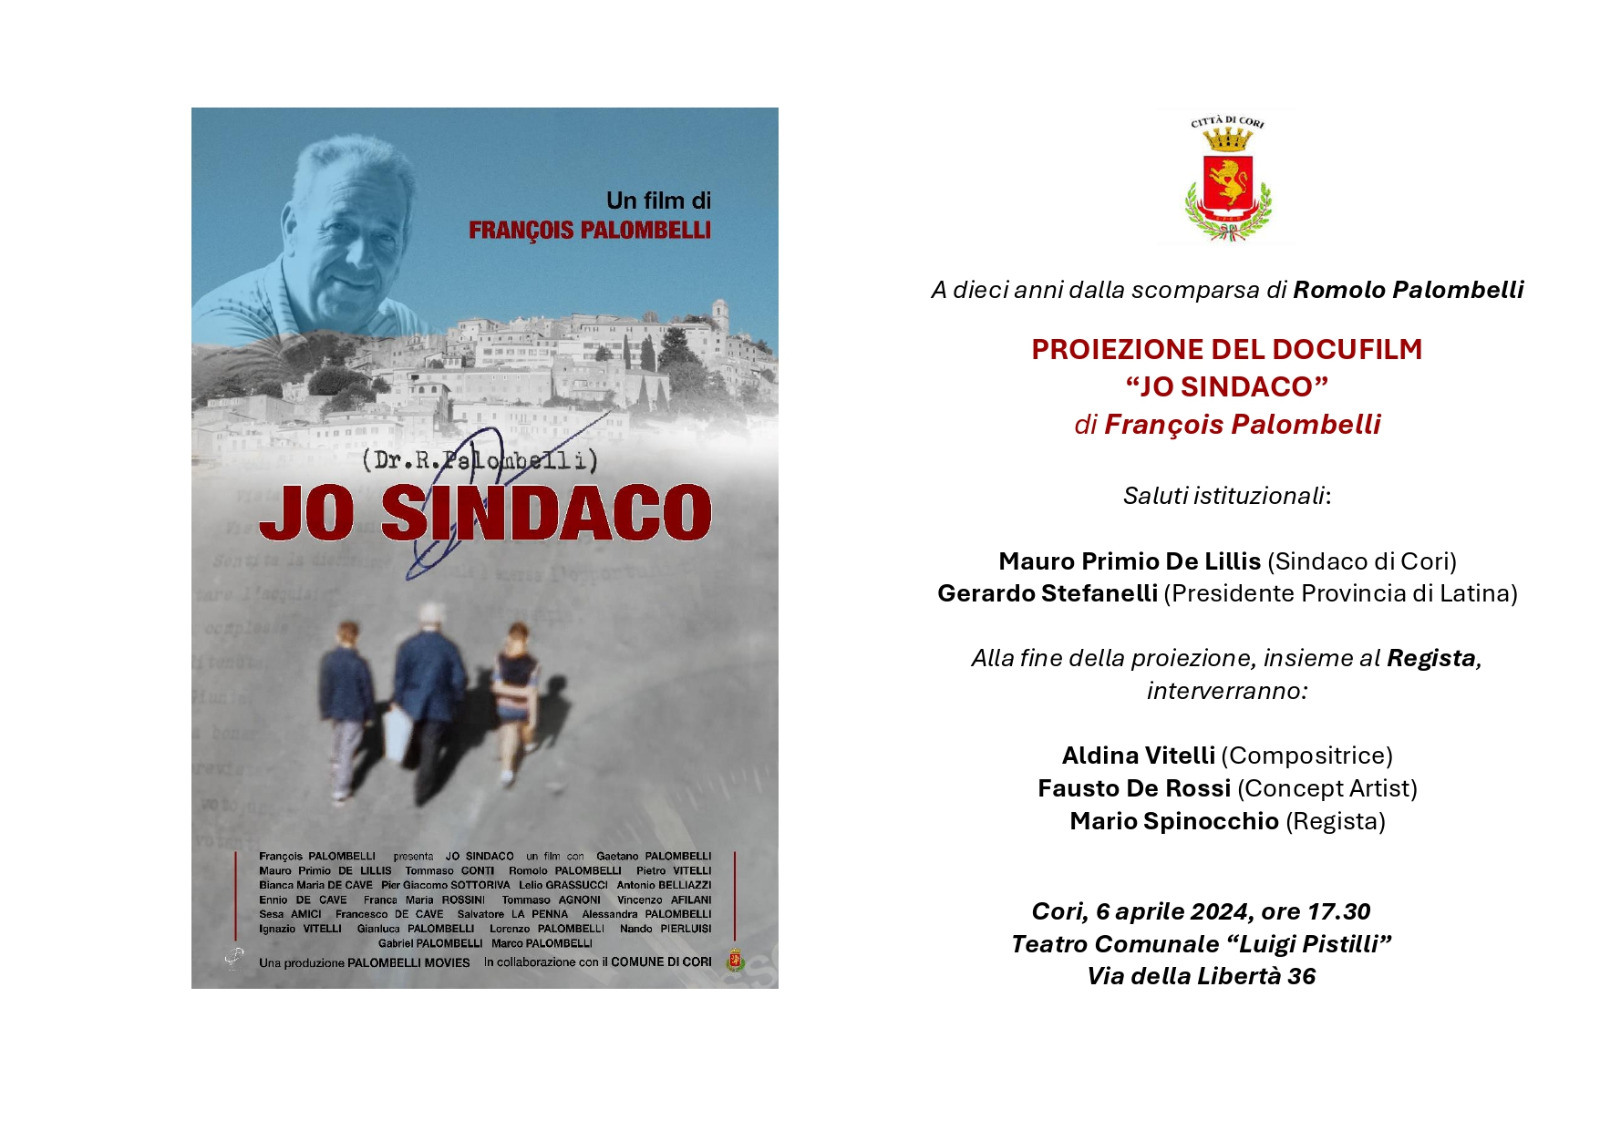 Cori: Proiezione del docufilm "JO SINDACO" di François Palombelli @ Teatro Comunale Luigi Pistilli